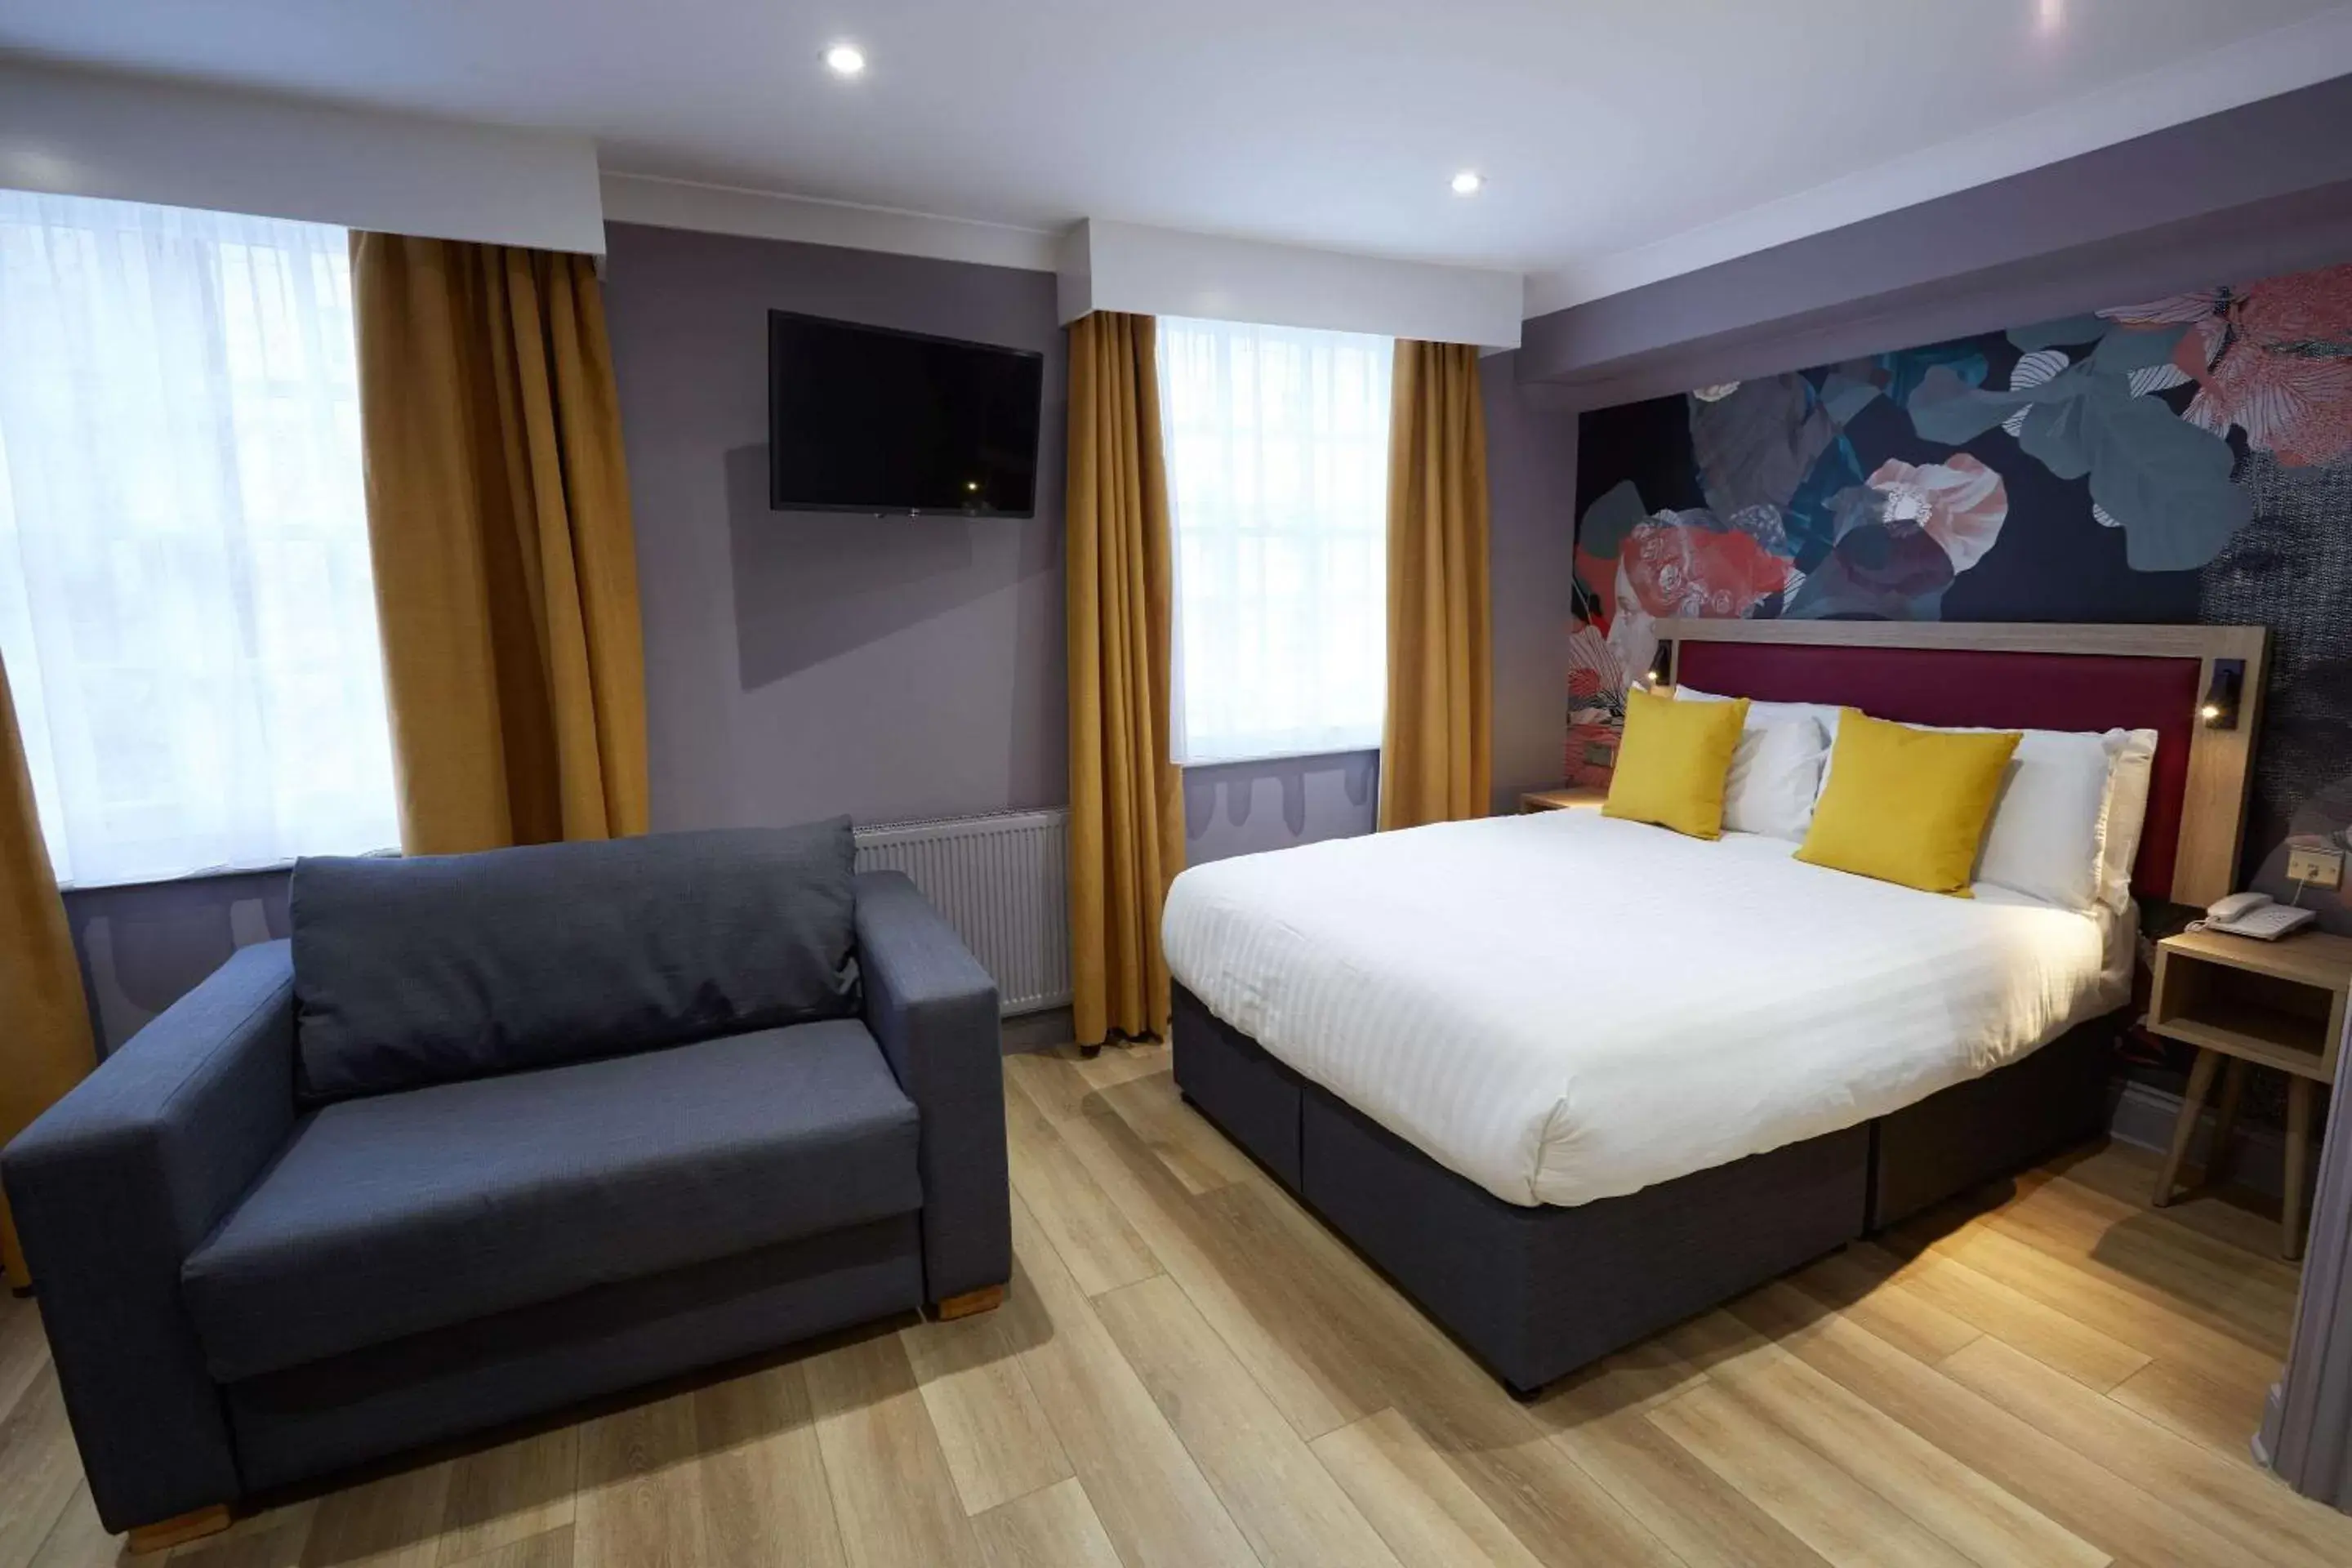 Bedroom in Comfort Inn Victoria